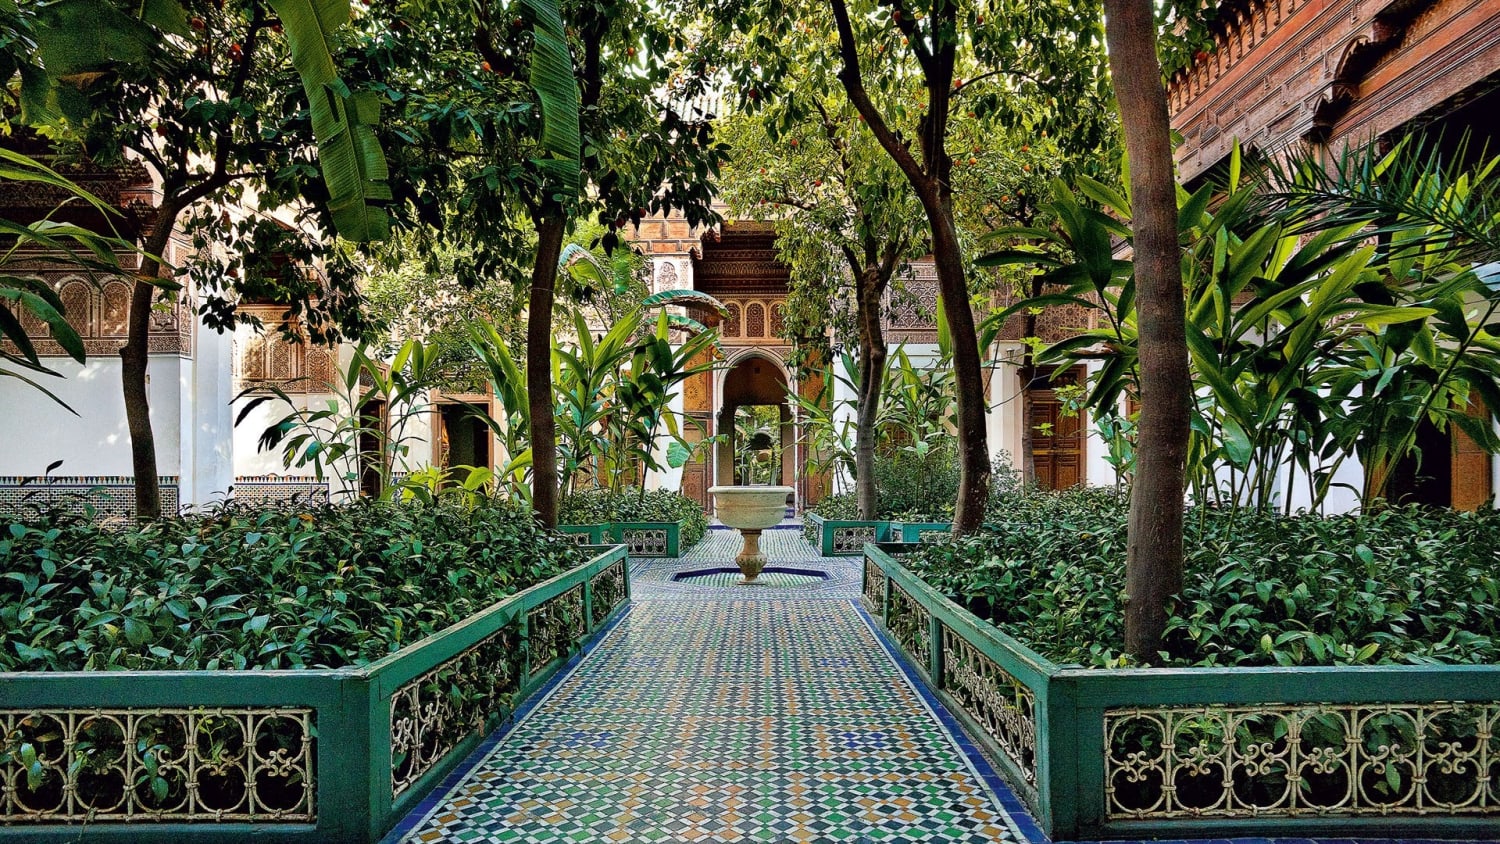 The magic of Moroccan garden design